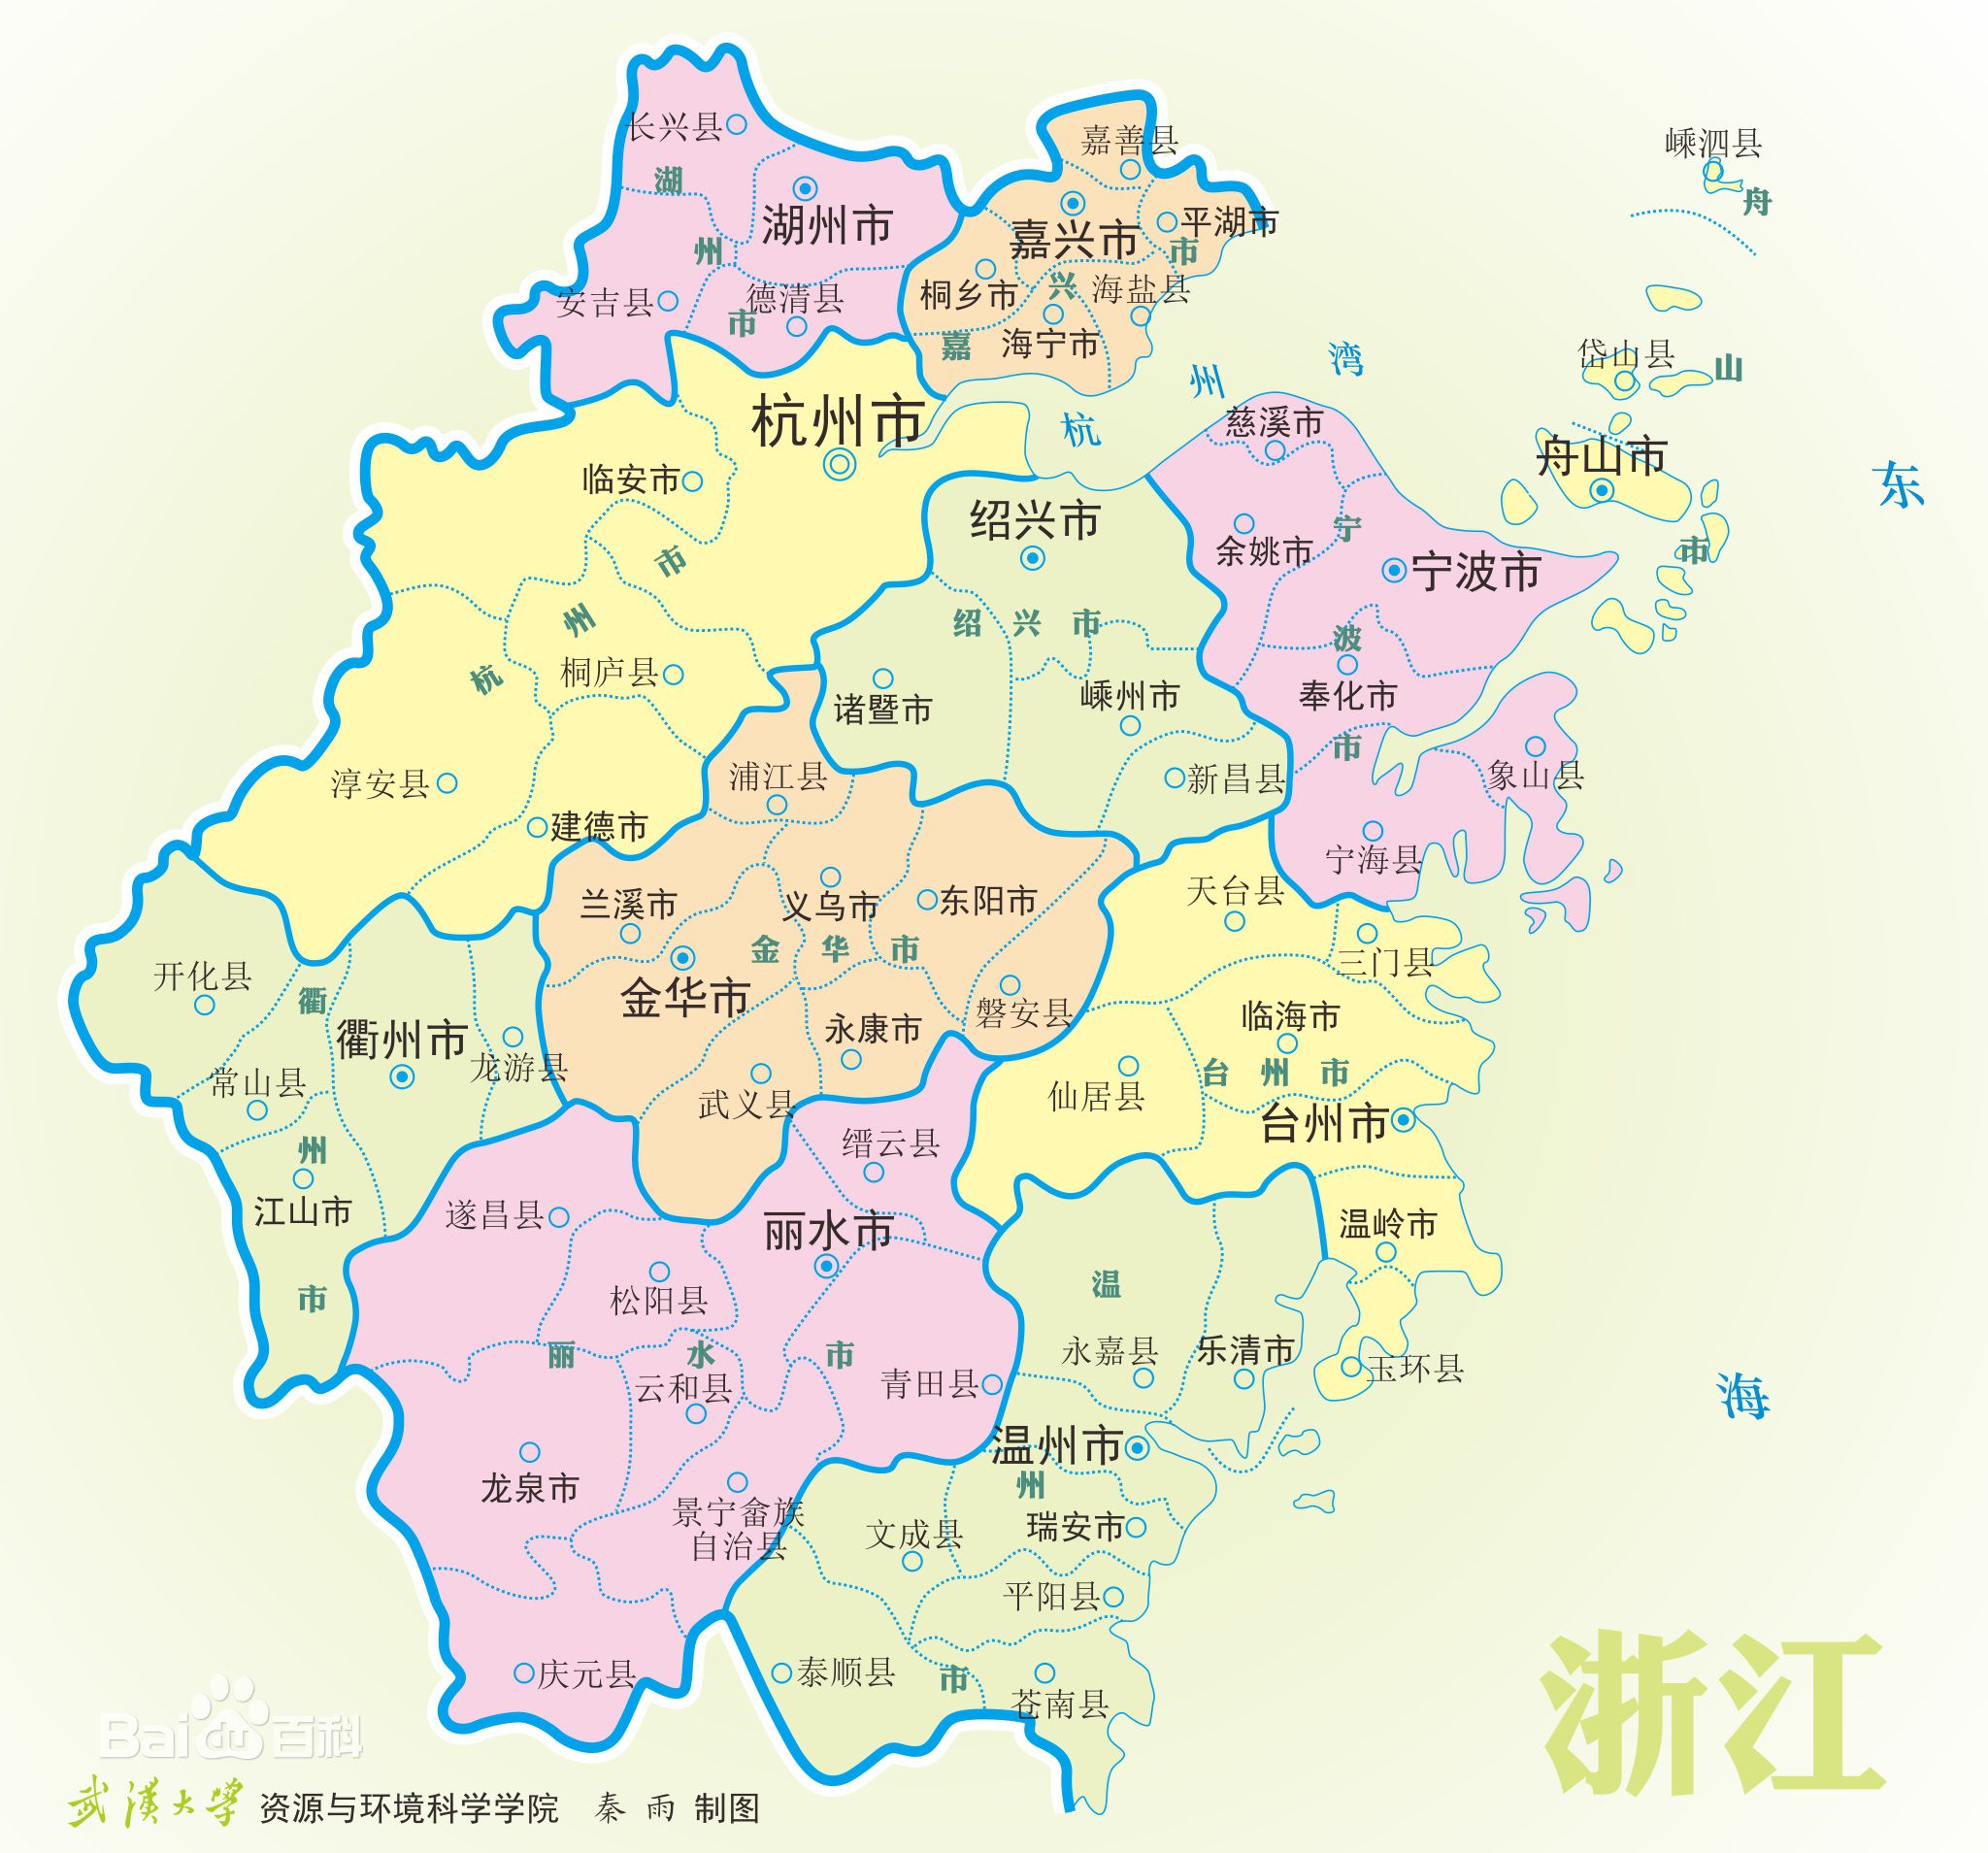 浙江土地成交周报:恒大摘诸暨285亩宅地(4.24-4.28)